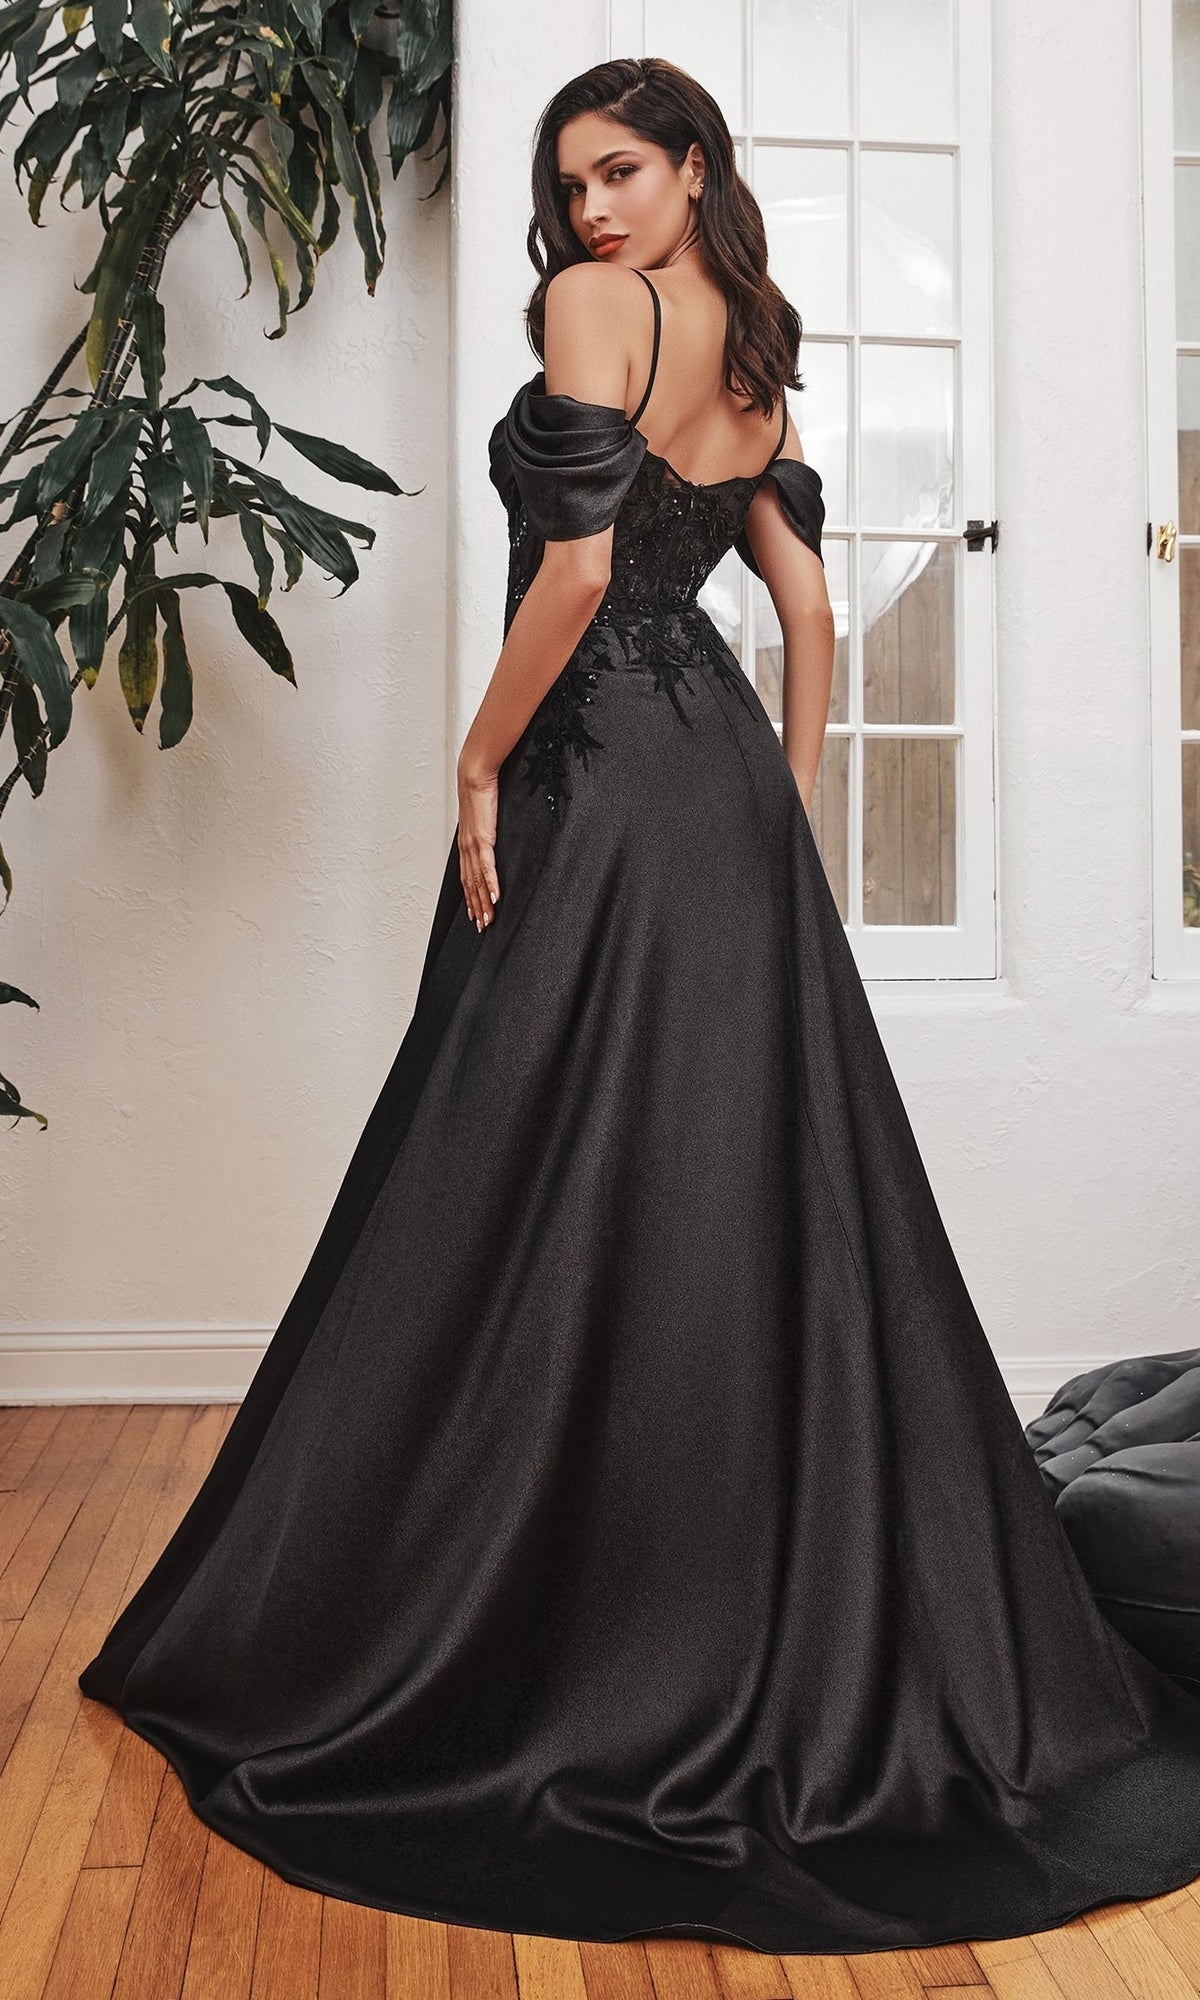 Cold-Shoulder Long Satin A-Line Prom Dress OC012